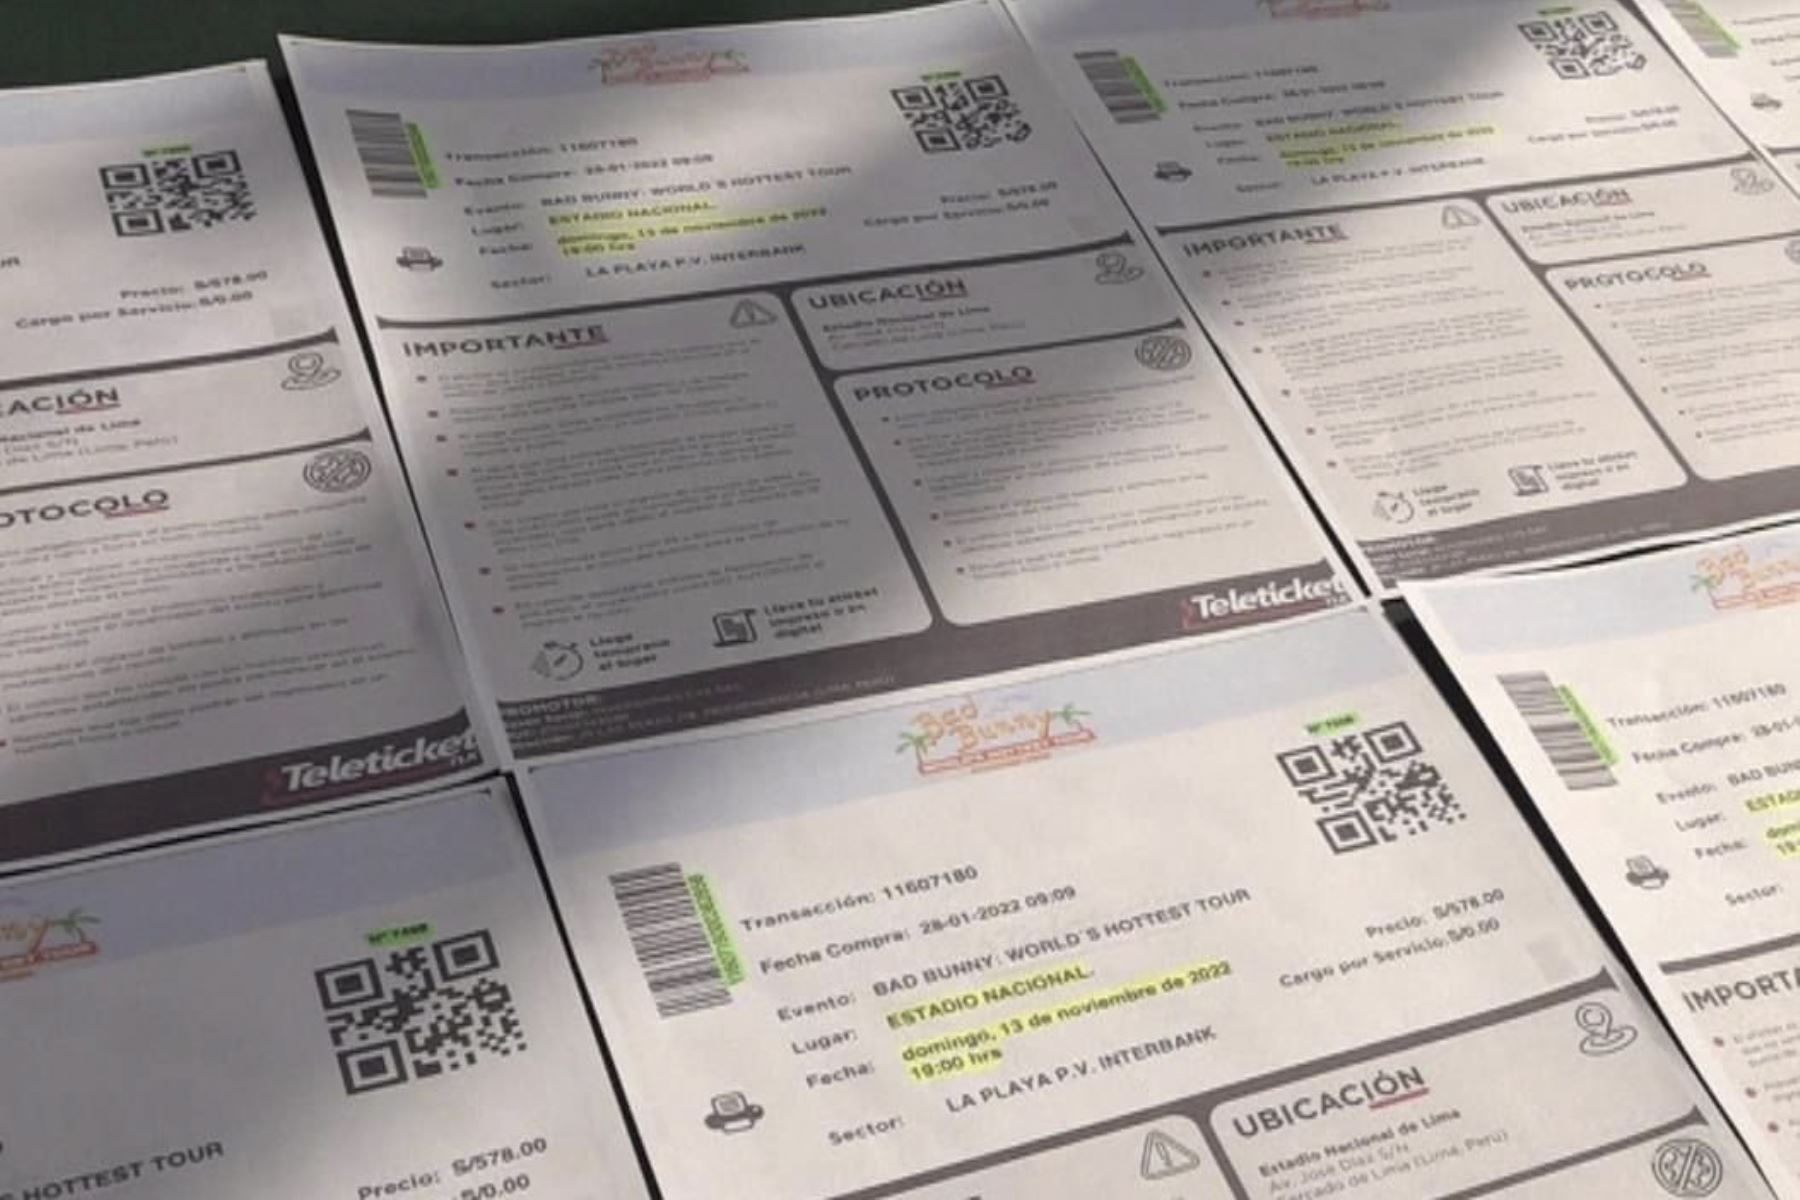 Sujeto vendía entradas falsas para el concierto de Daddy Yankee; PNP le incautó tarjetas de diferentes entidades bancarias. Foto: ANDINA/Difusión